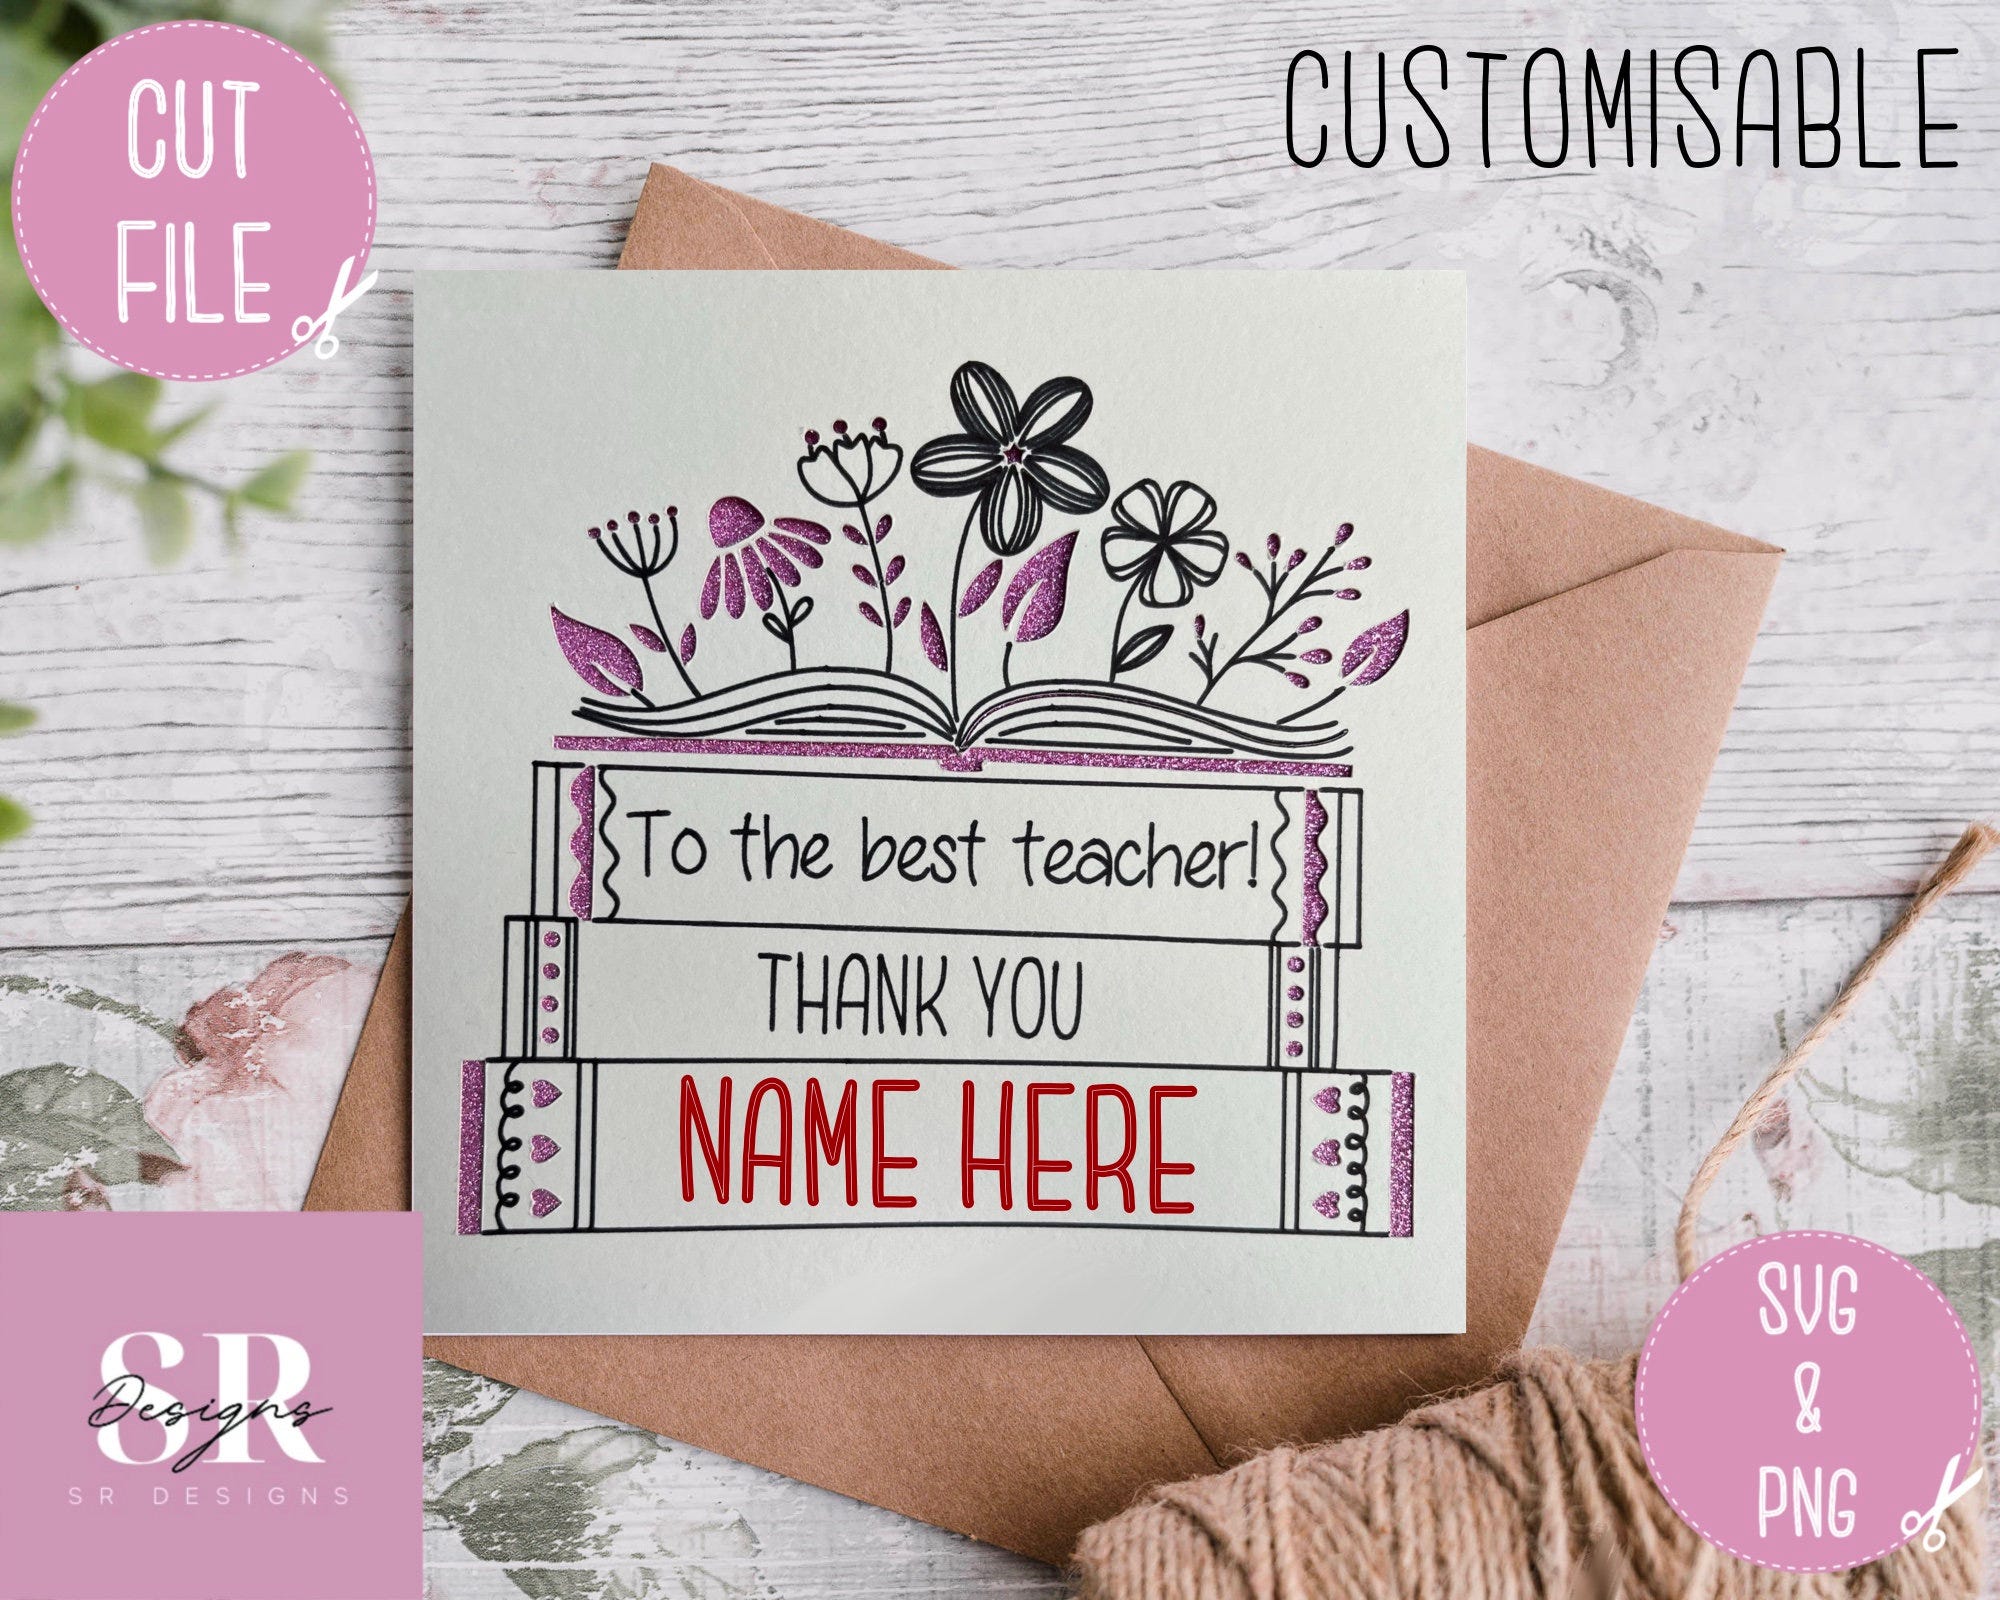 SVG: Thank you teacher card. Digital download. Paper cutting. Customisable teacher card. Teacher appreciation. Cut and draw card SVG.